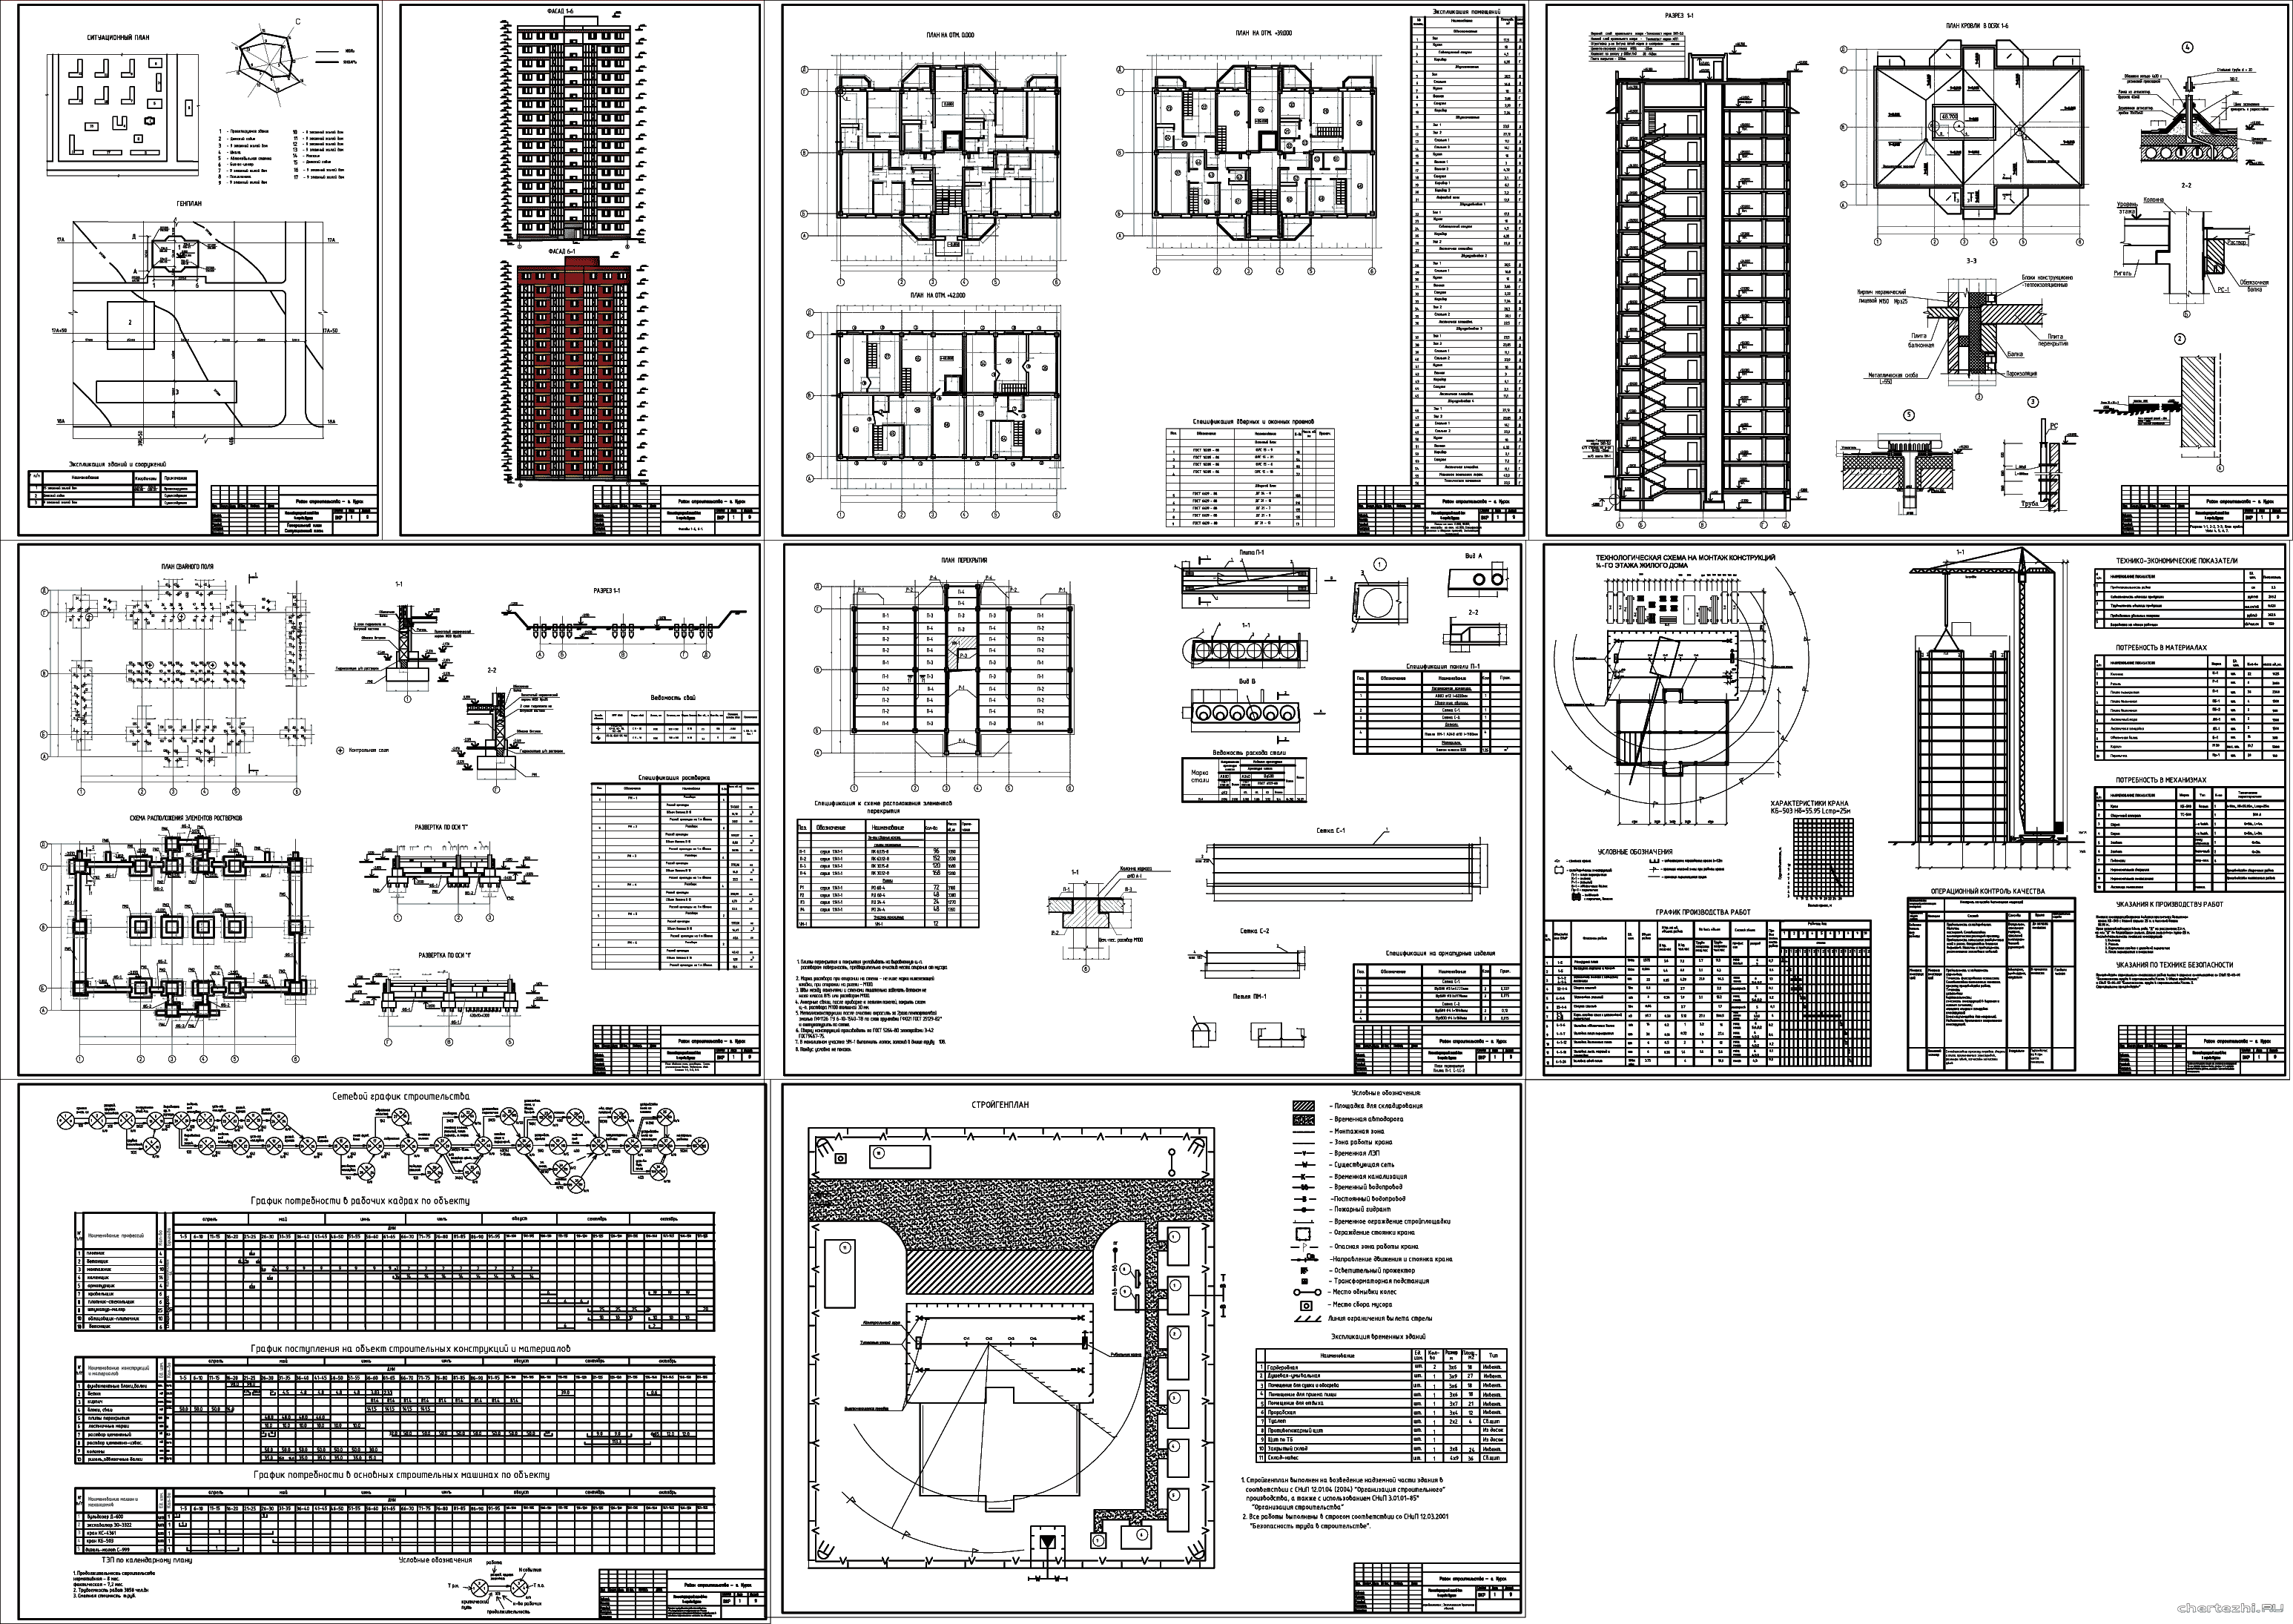 Дипломный проект (техникум) - 7-ми этажный жилой дом 25,32 х 13,70 м в г. Пенза